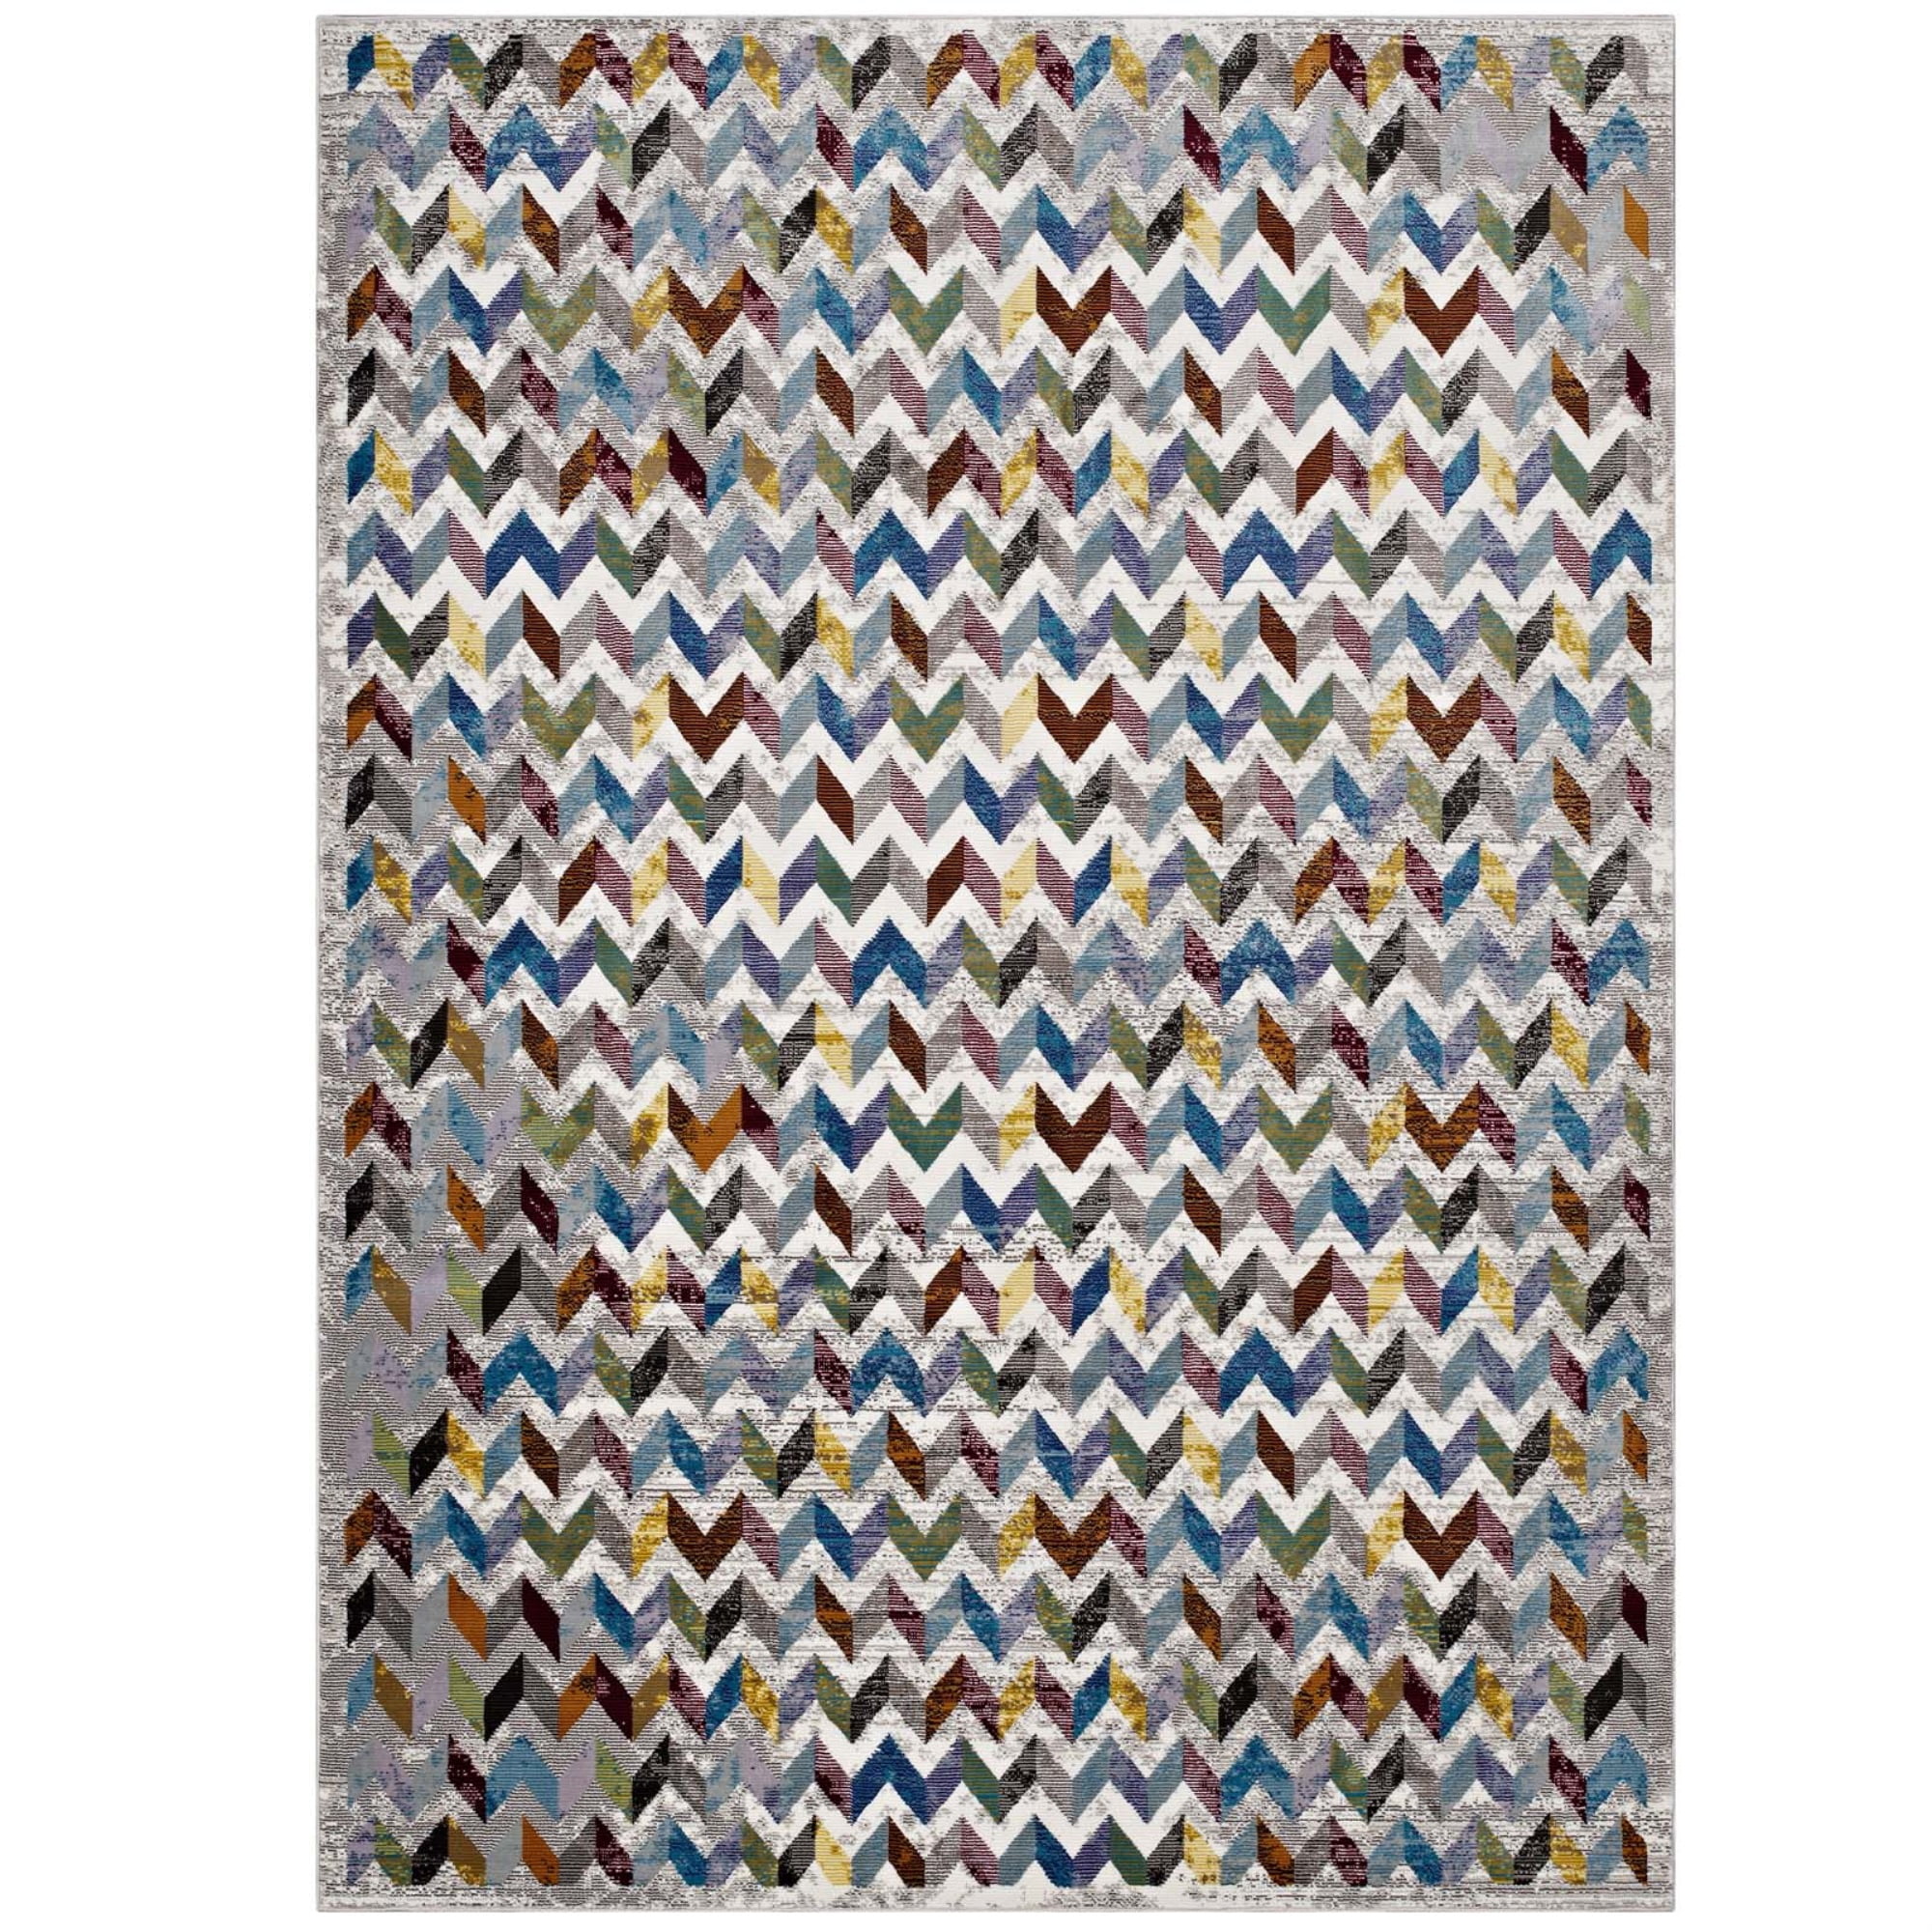 Ergode Lavendula Triangle Mosaic 5x8 Area Rug Multicolored 